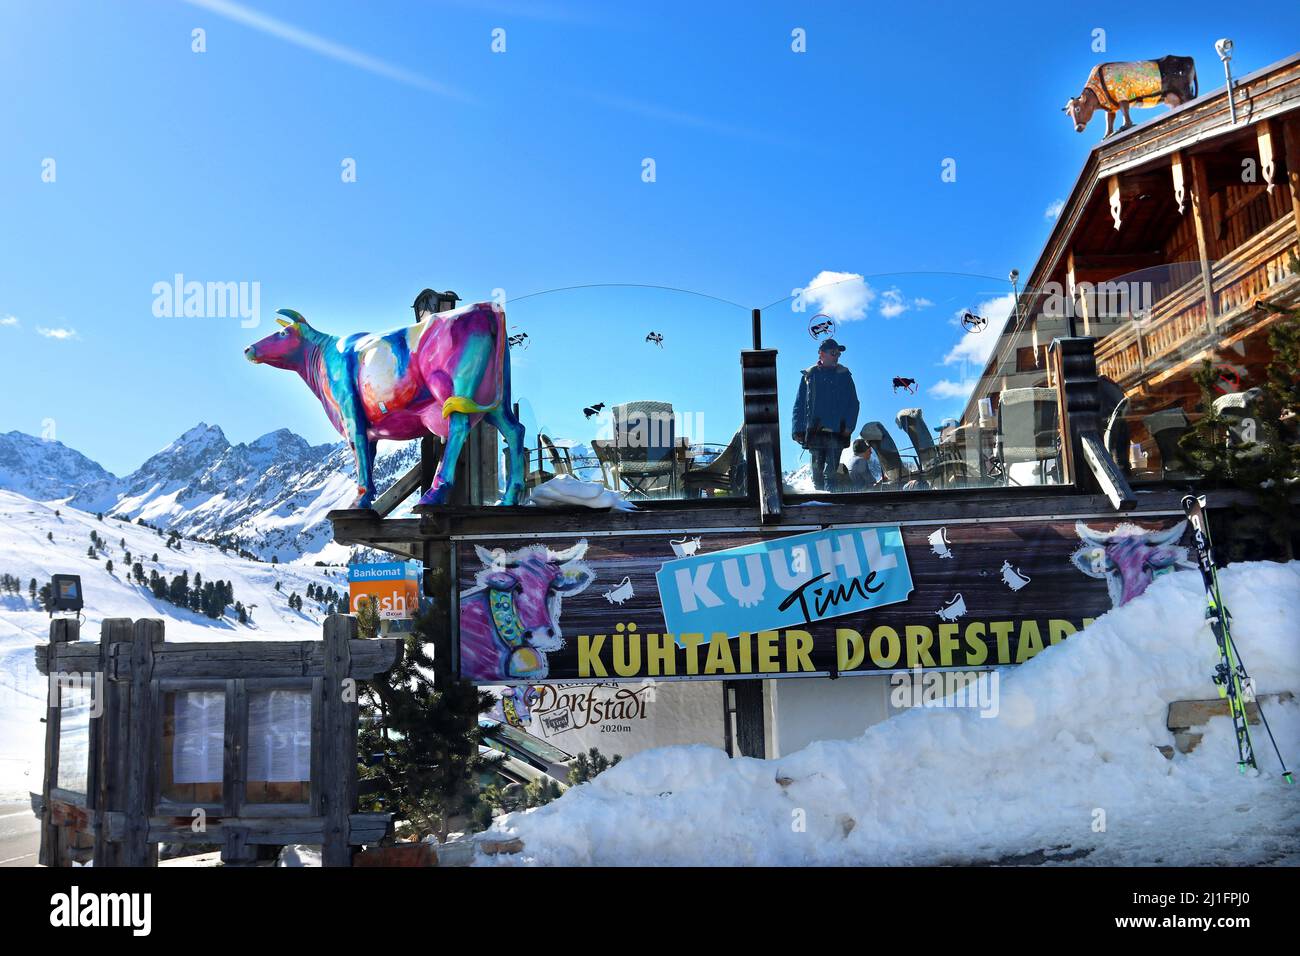 Modello di vacca multicolore contro un cielo blu brillante: Il logo del ristorante Kuhtaier Dorfstadl nello sci della località di Kuhtai, Alpi tirolesi, Austria Foto Stock